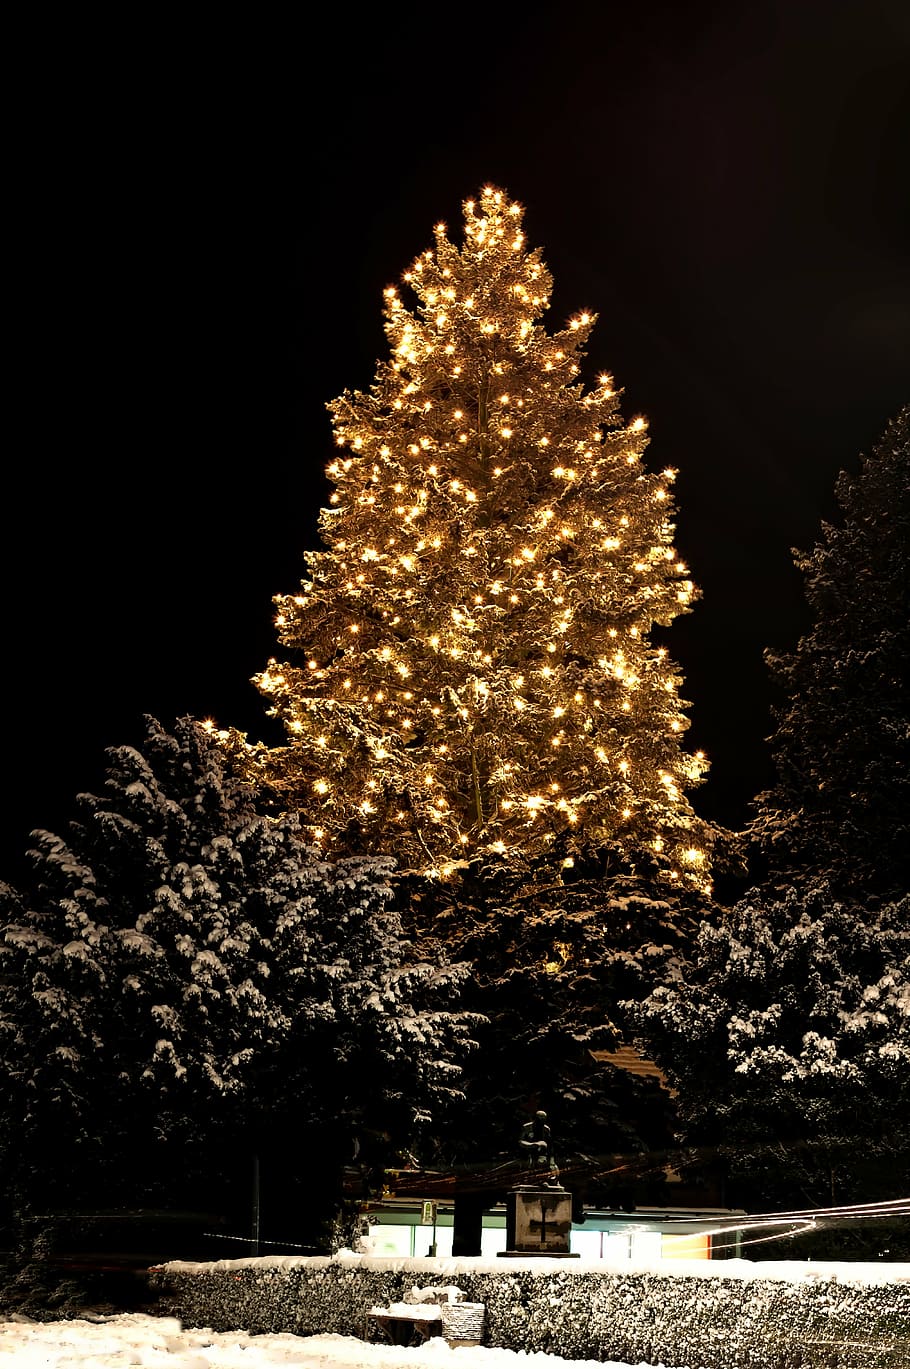 pre-lit tree, christmas, weihnachtsbaumschmuck, green, glaskugeln, snow, lighting, tree, dark, night